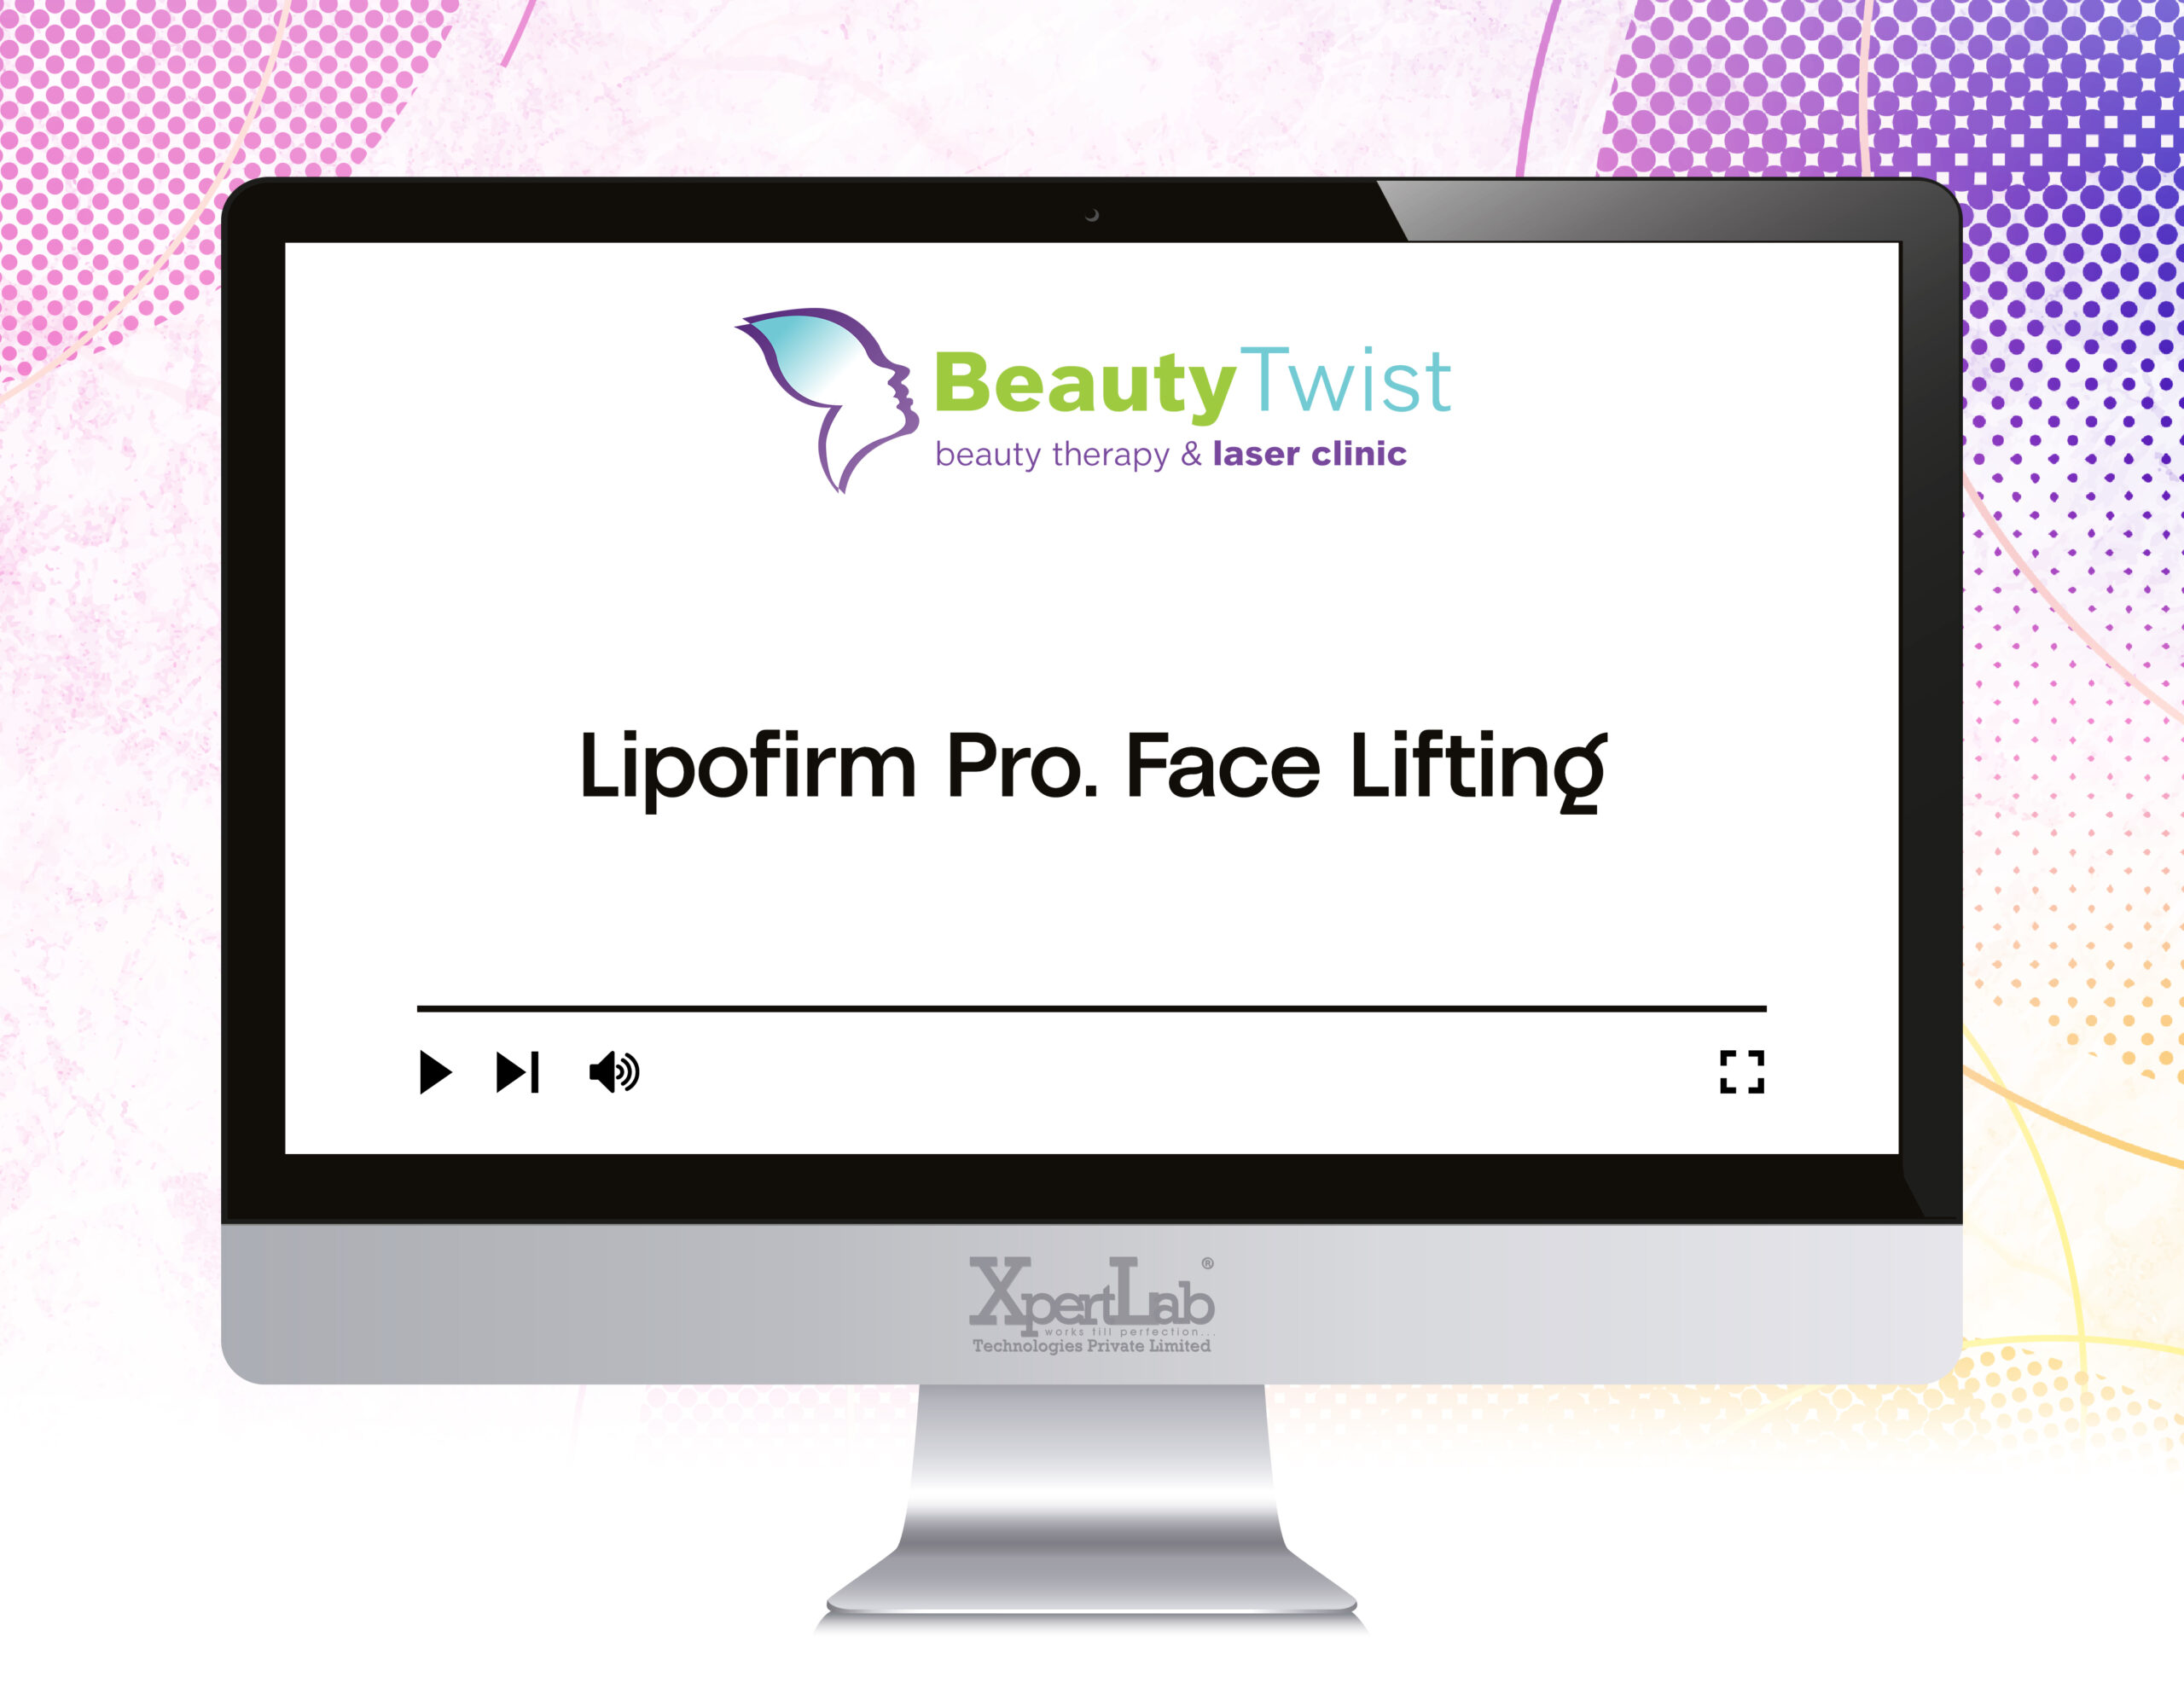 Lipofirm-Pro.-Face-Lifting (1)